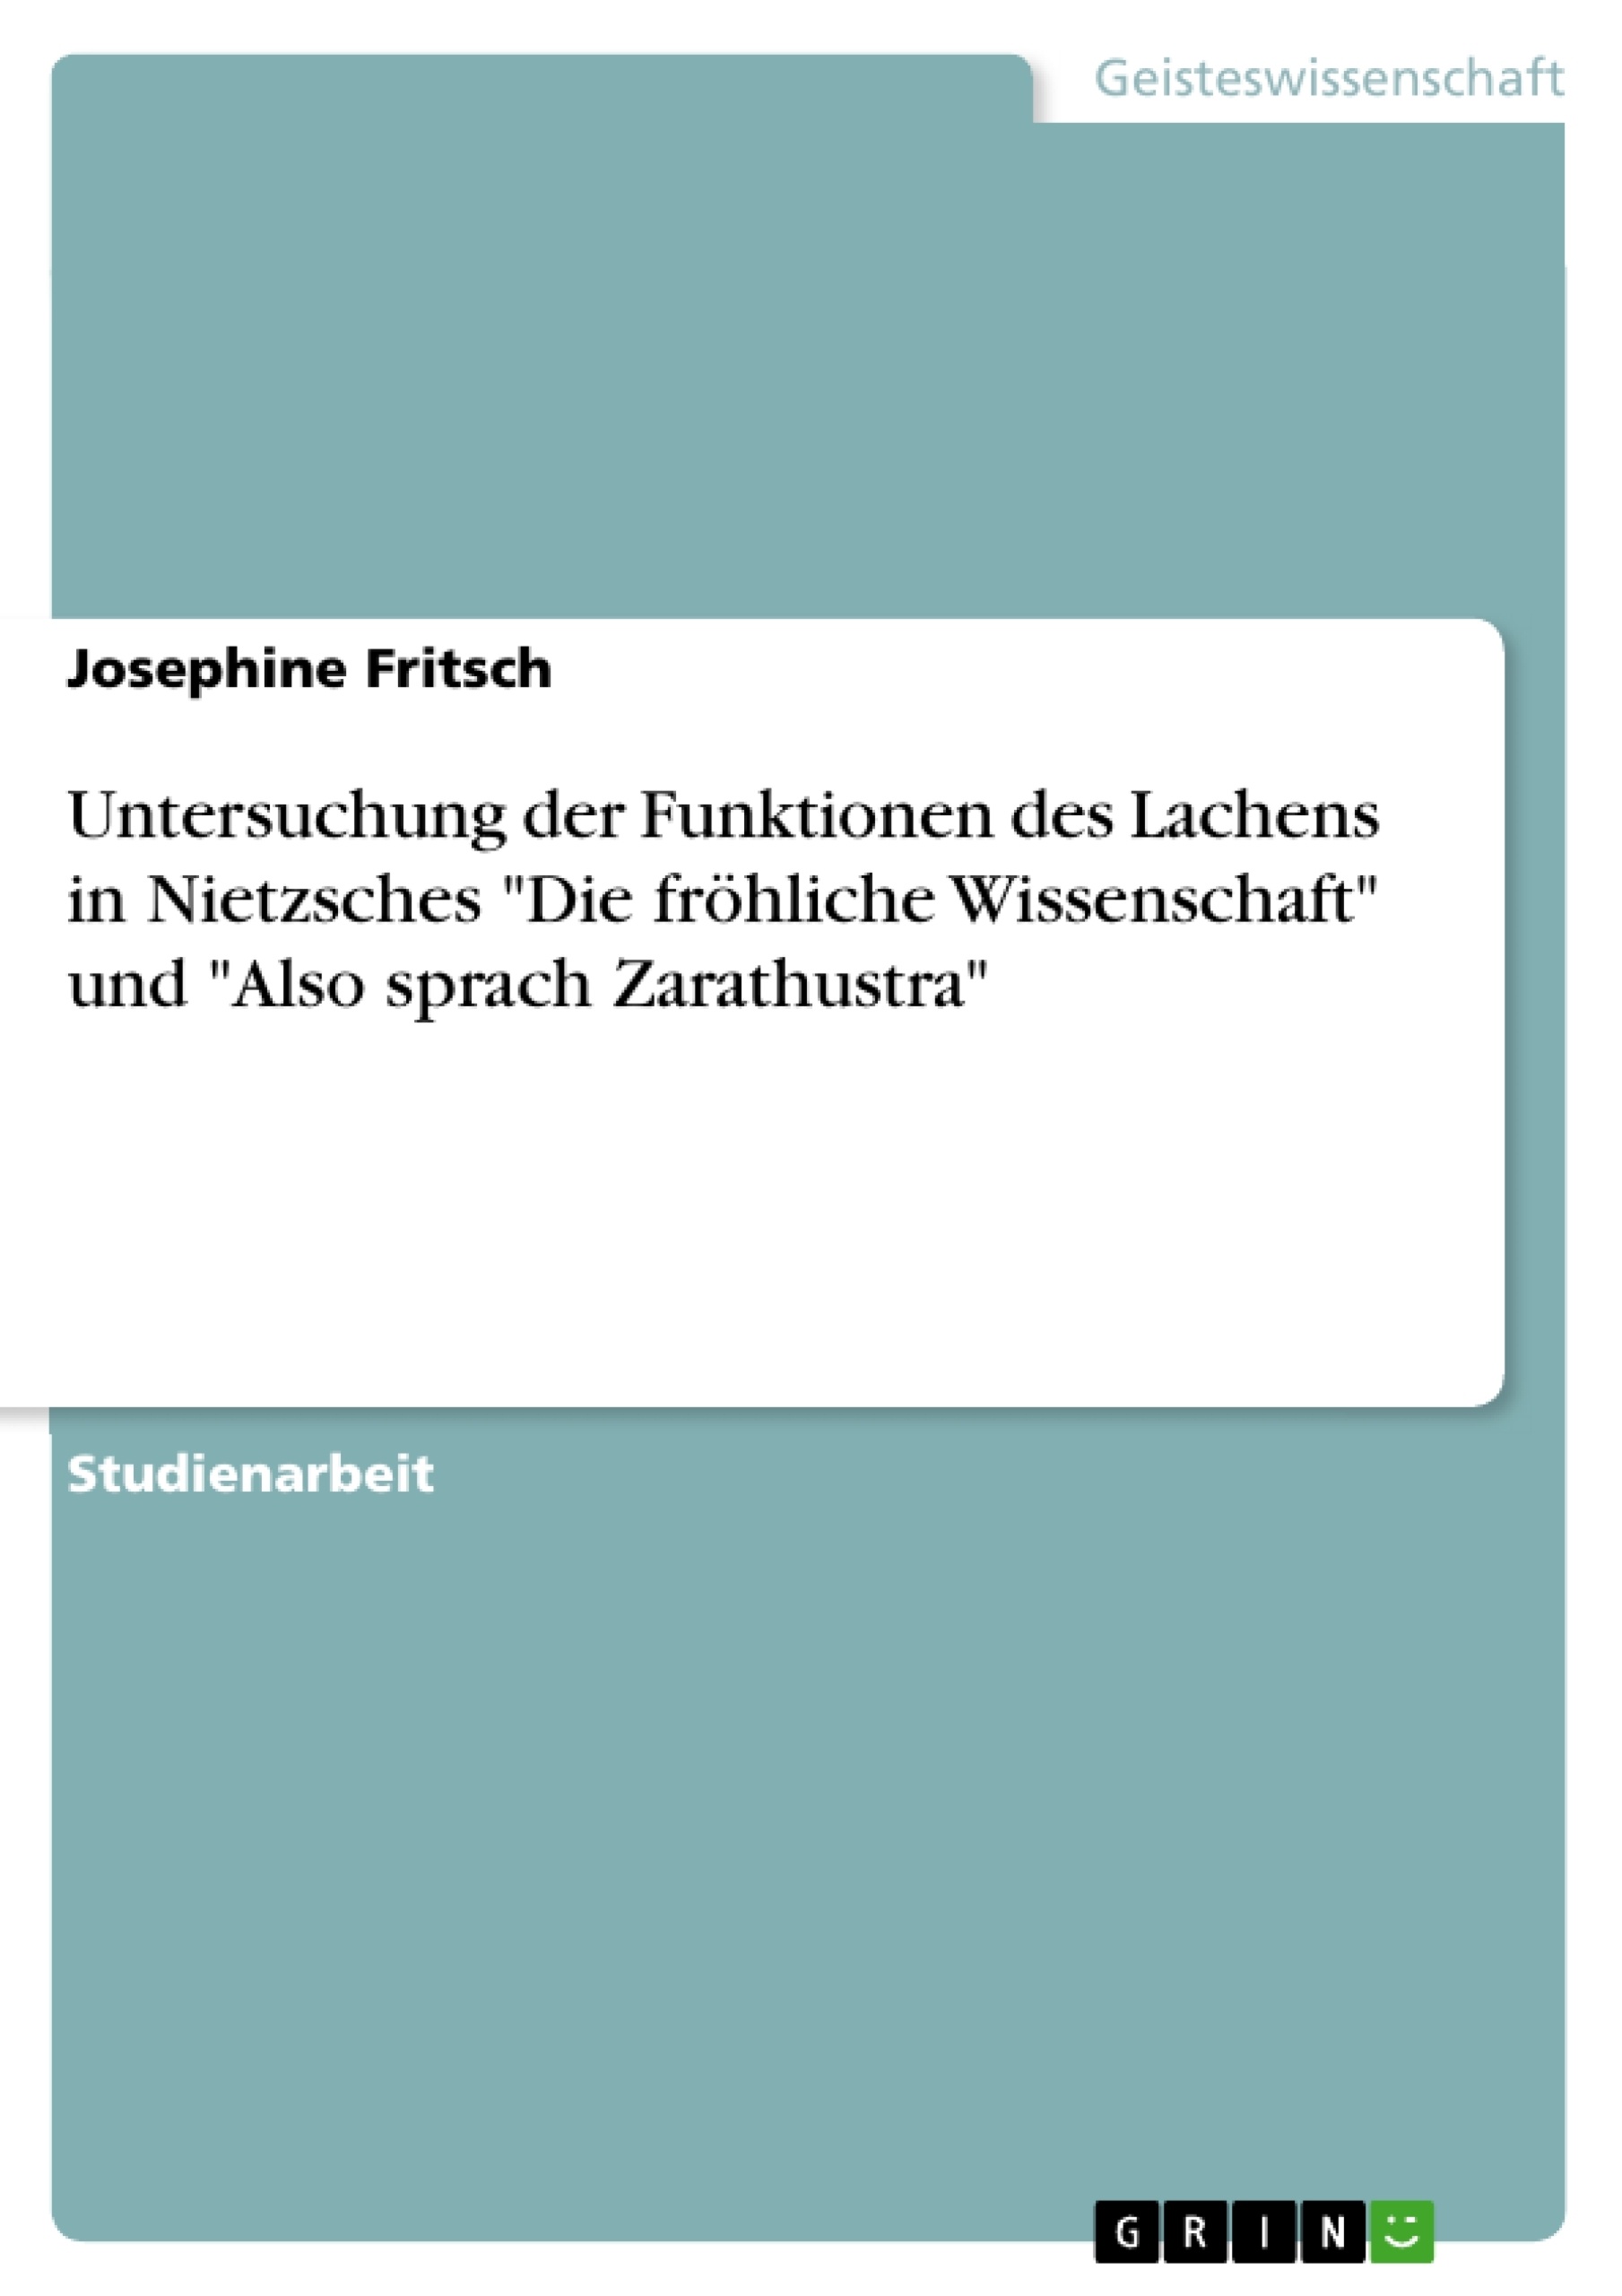 Título: Untersuchung der Funktionen des Lachens in Nietzsches "Die fröhliche Wissenschaft" und "Also sprach Zarathustra"